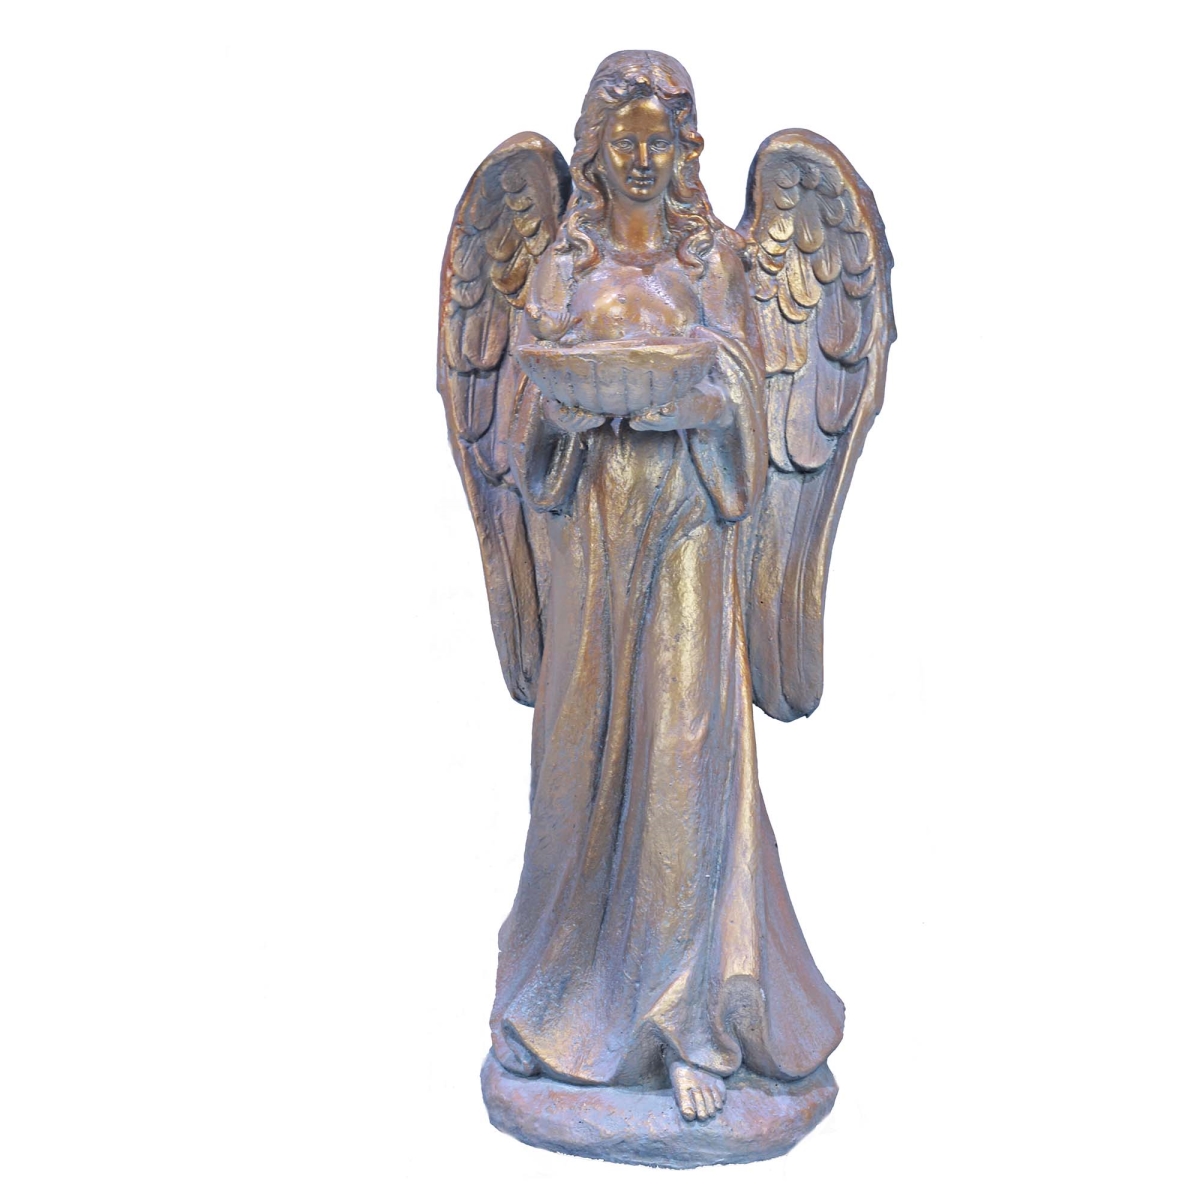 Bm-g32402aa-n Angel Figurine - Gold